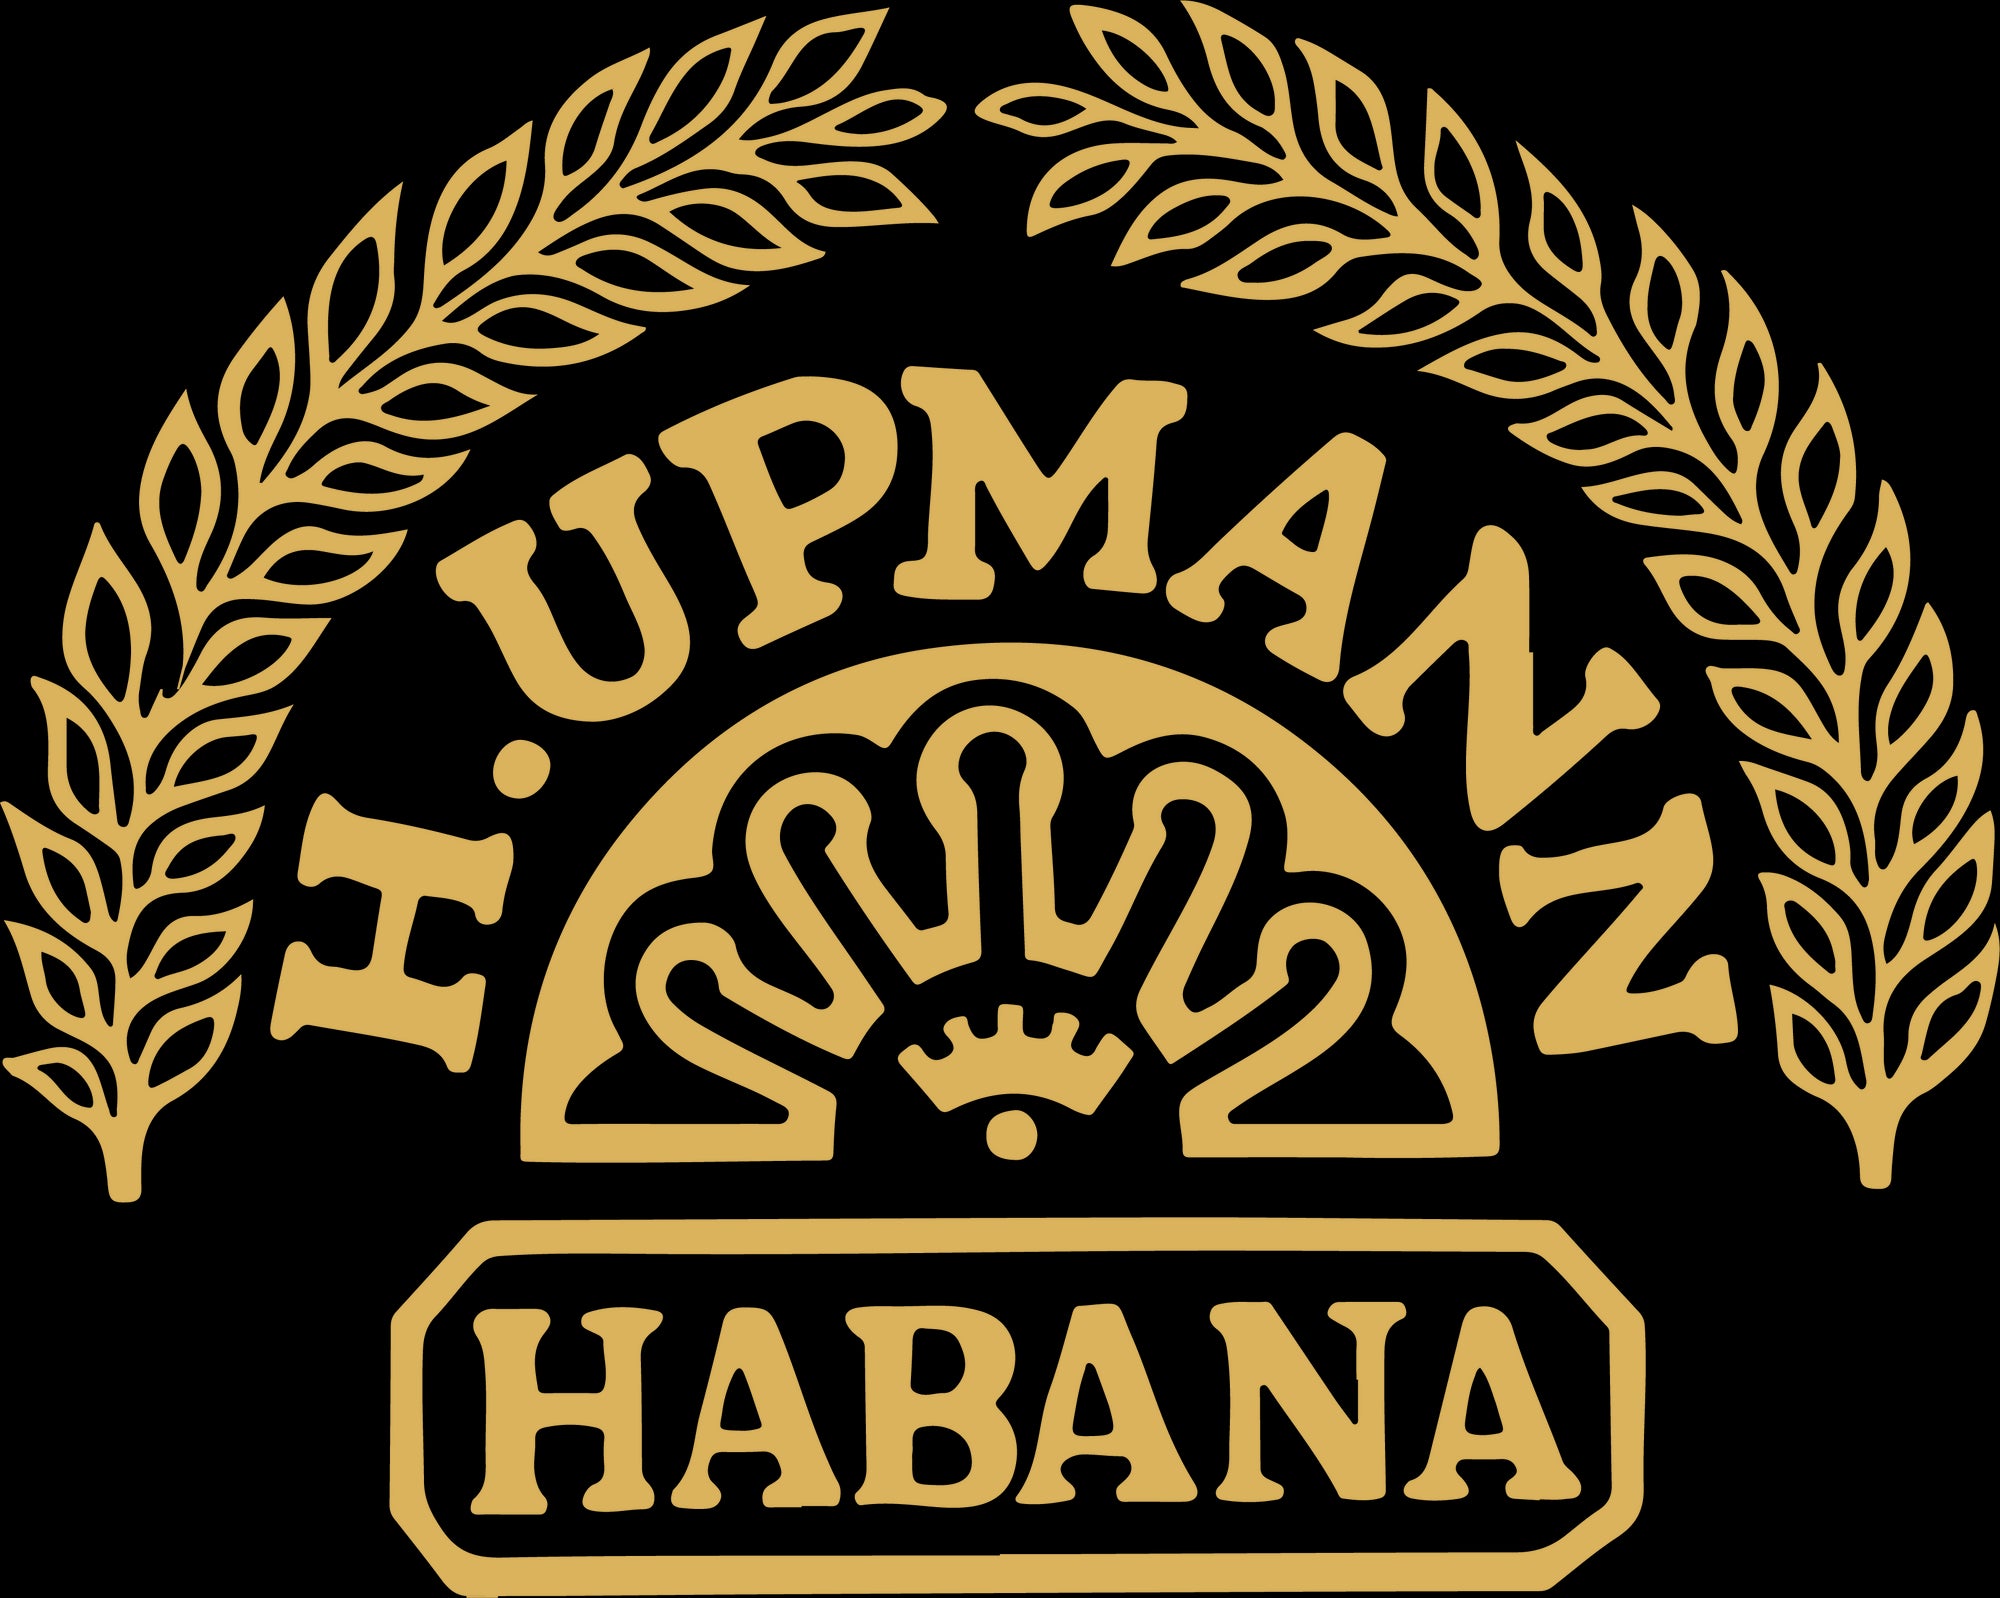 XIGA CUBA H.Upmann oldest cuban cigar brand